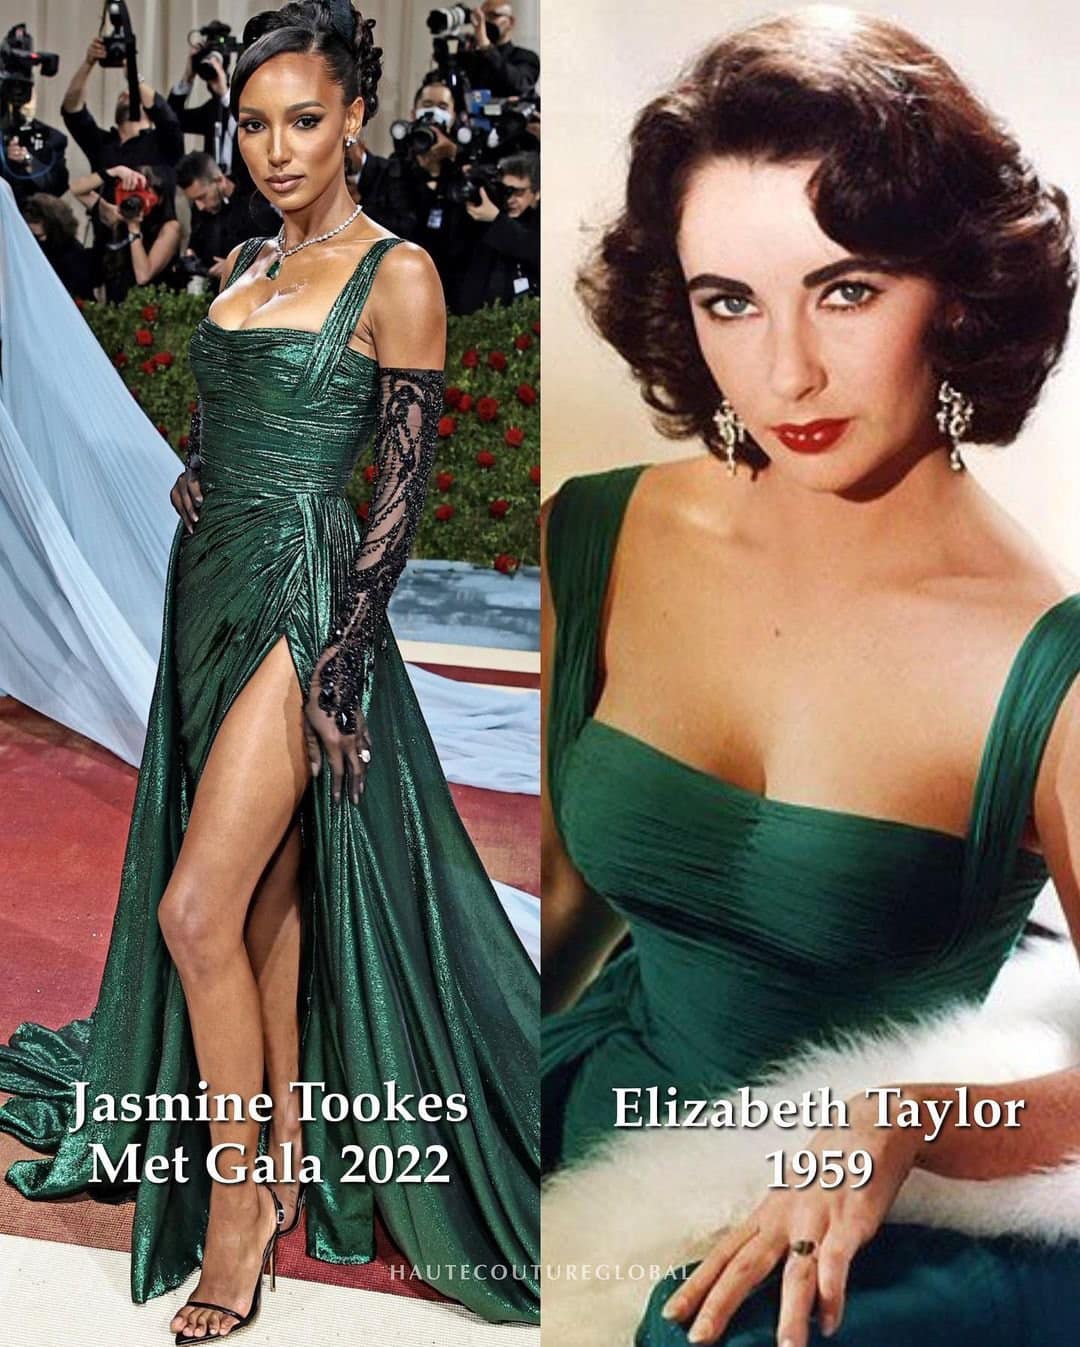 Jasmine Tookes diện mẫu váy dạ hội xanh ngọc bích, từng là thiết kế kinh điển gắn liền với hình ảnh nữ diễn viên Elizabeth Taylor.